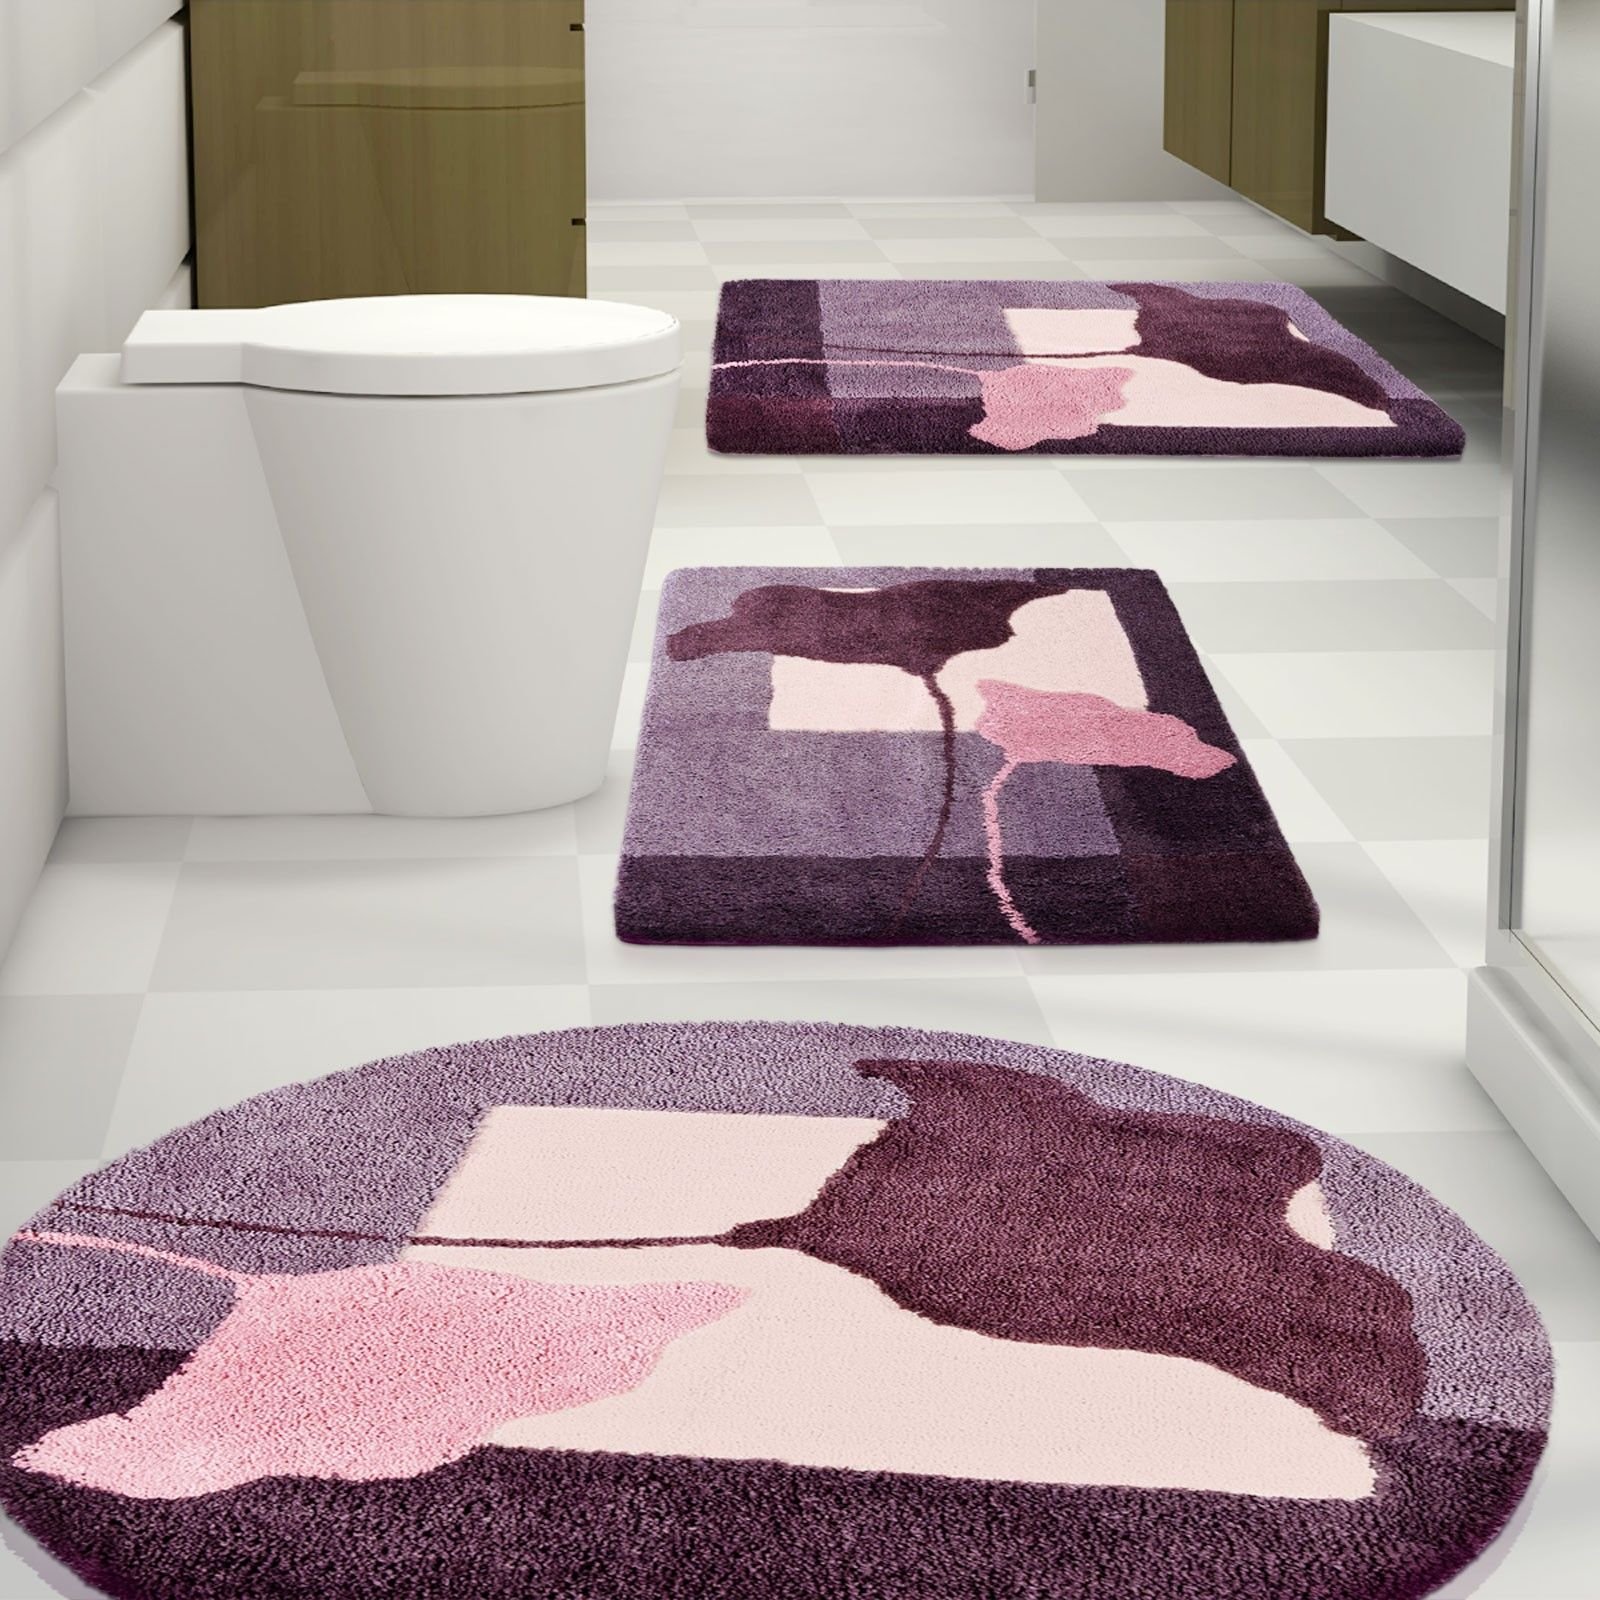 Ванные коврики интернет магазин. Ковер Violet v850. Коврики для ванной комнаты. Дизайнерские коврики для ванной. Ковер в ванную.